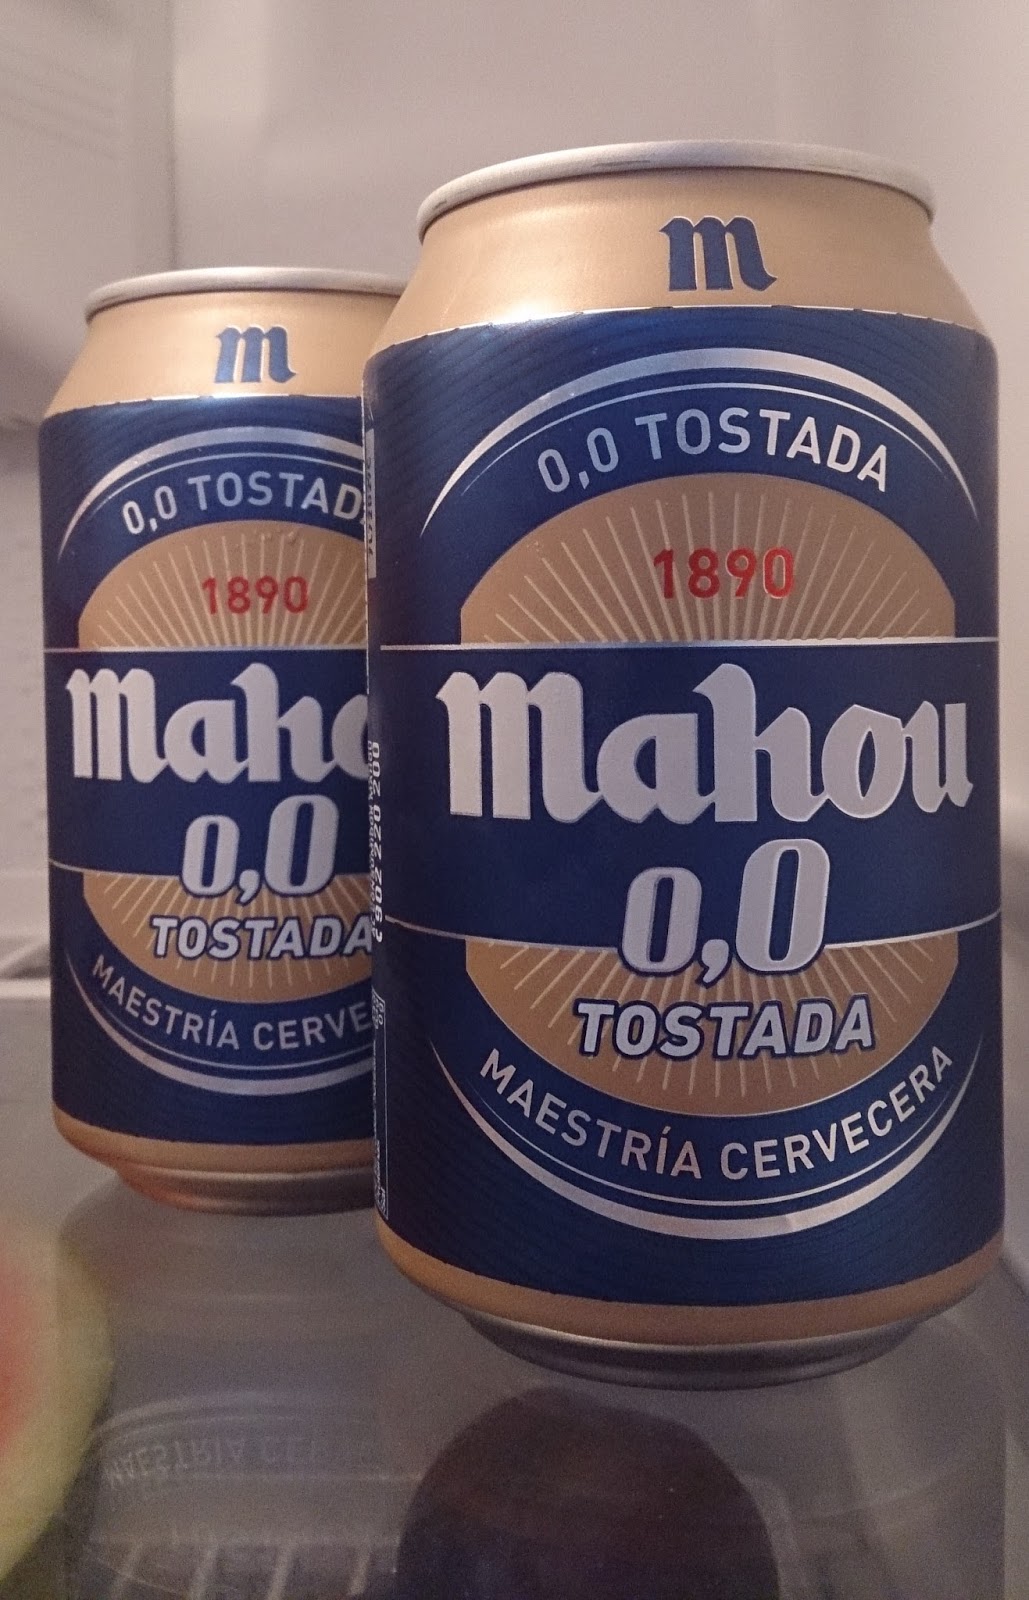 Mahou vuelve a innovar lanzando Mahou 0,0 Tostada, Campañas